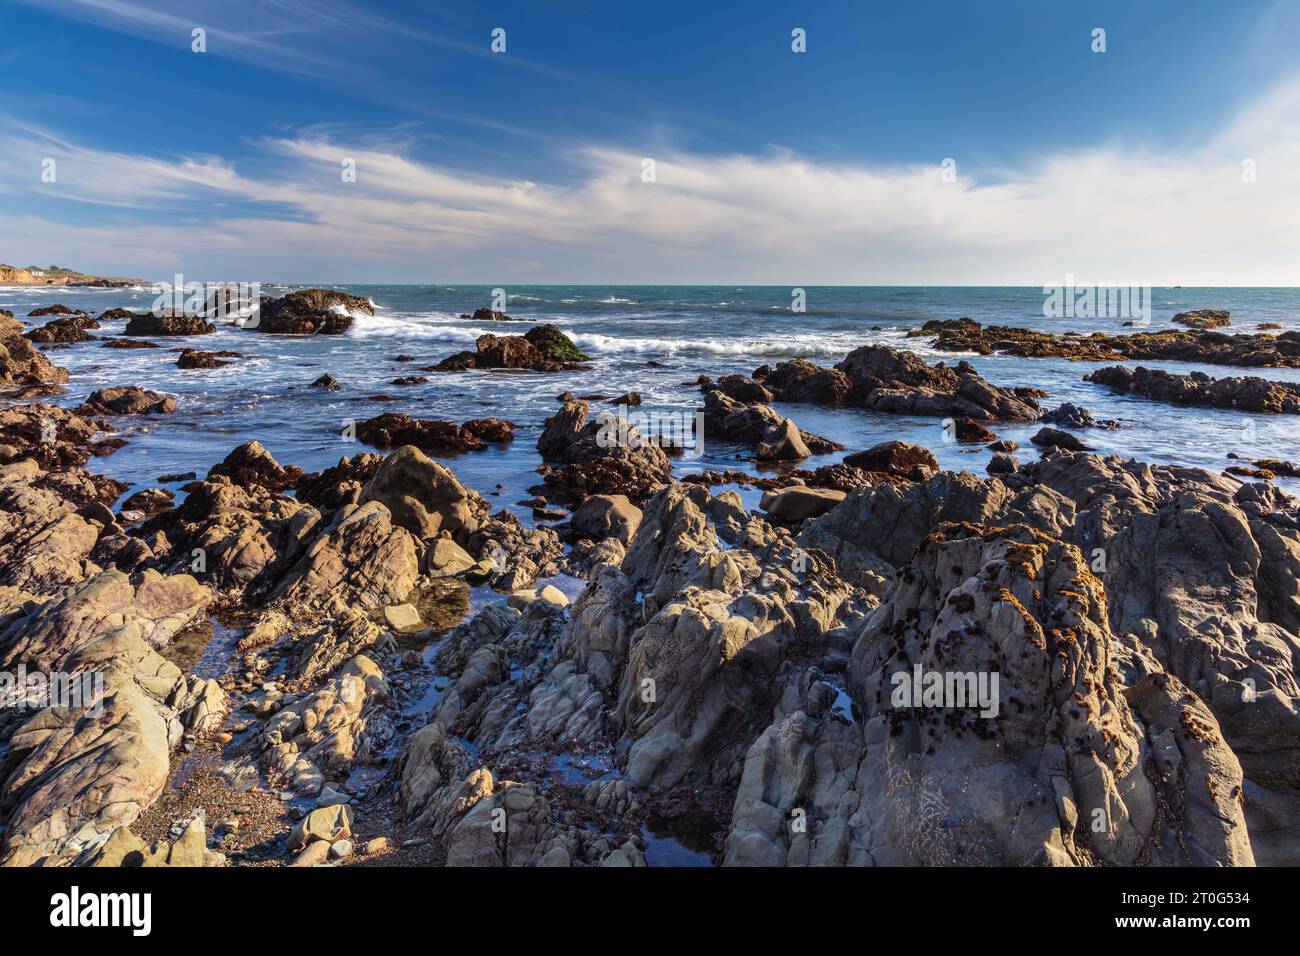 Spiaggia rocciosa con bassa marea a Cambria, California. Oceano Pacifico oltre. Cielo blu, nuvole sullo sfondo. Foto Stock